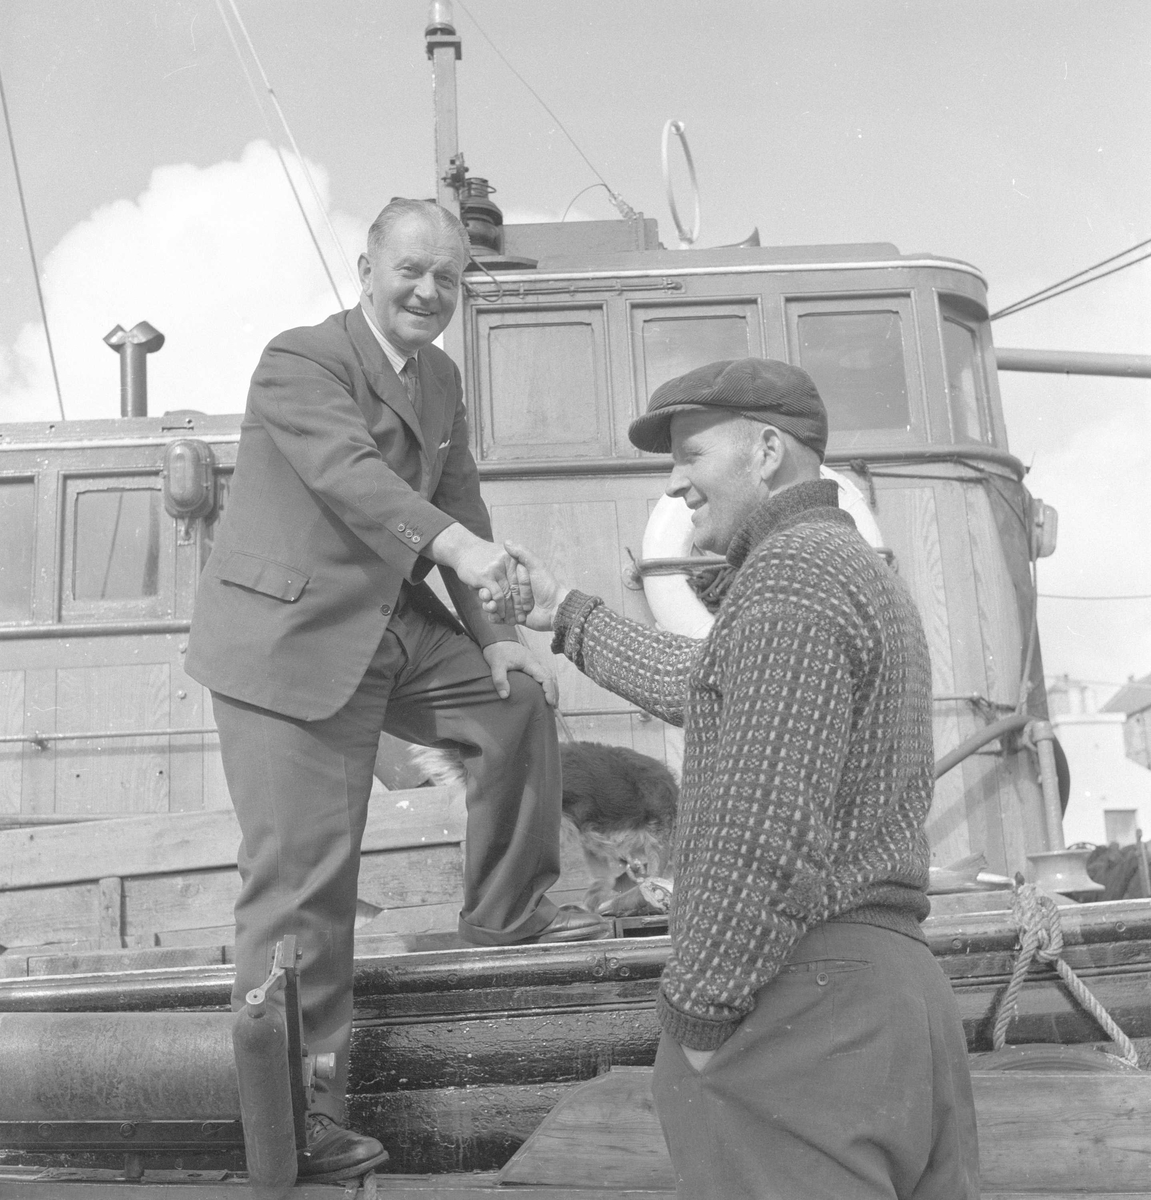 Pigghåfiske på Shetland.
Shetland, 14-22. mai 1958, to karer i hyggelig møte med hverandre.